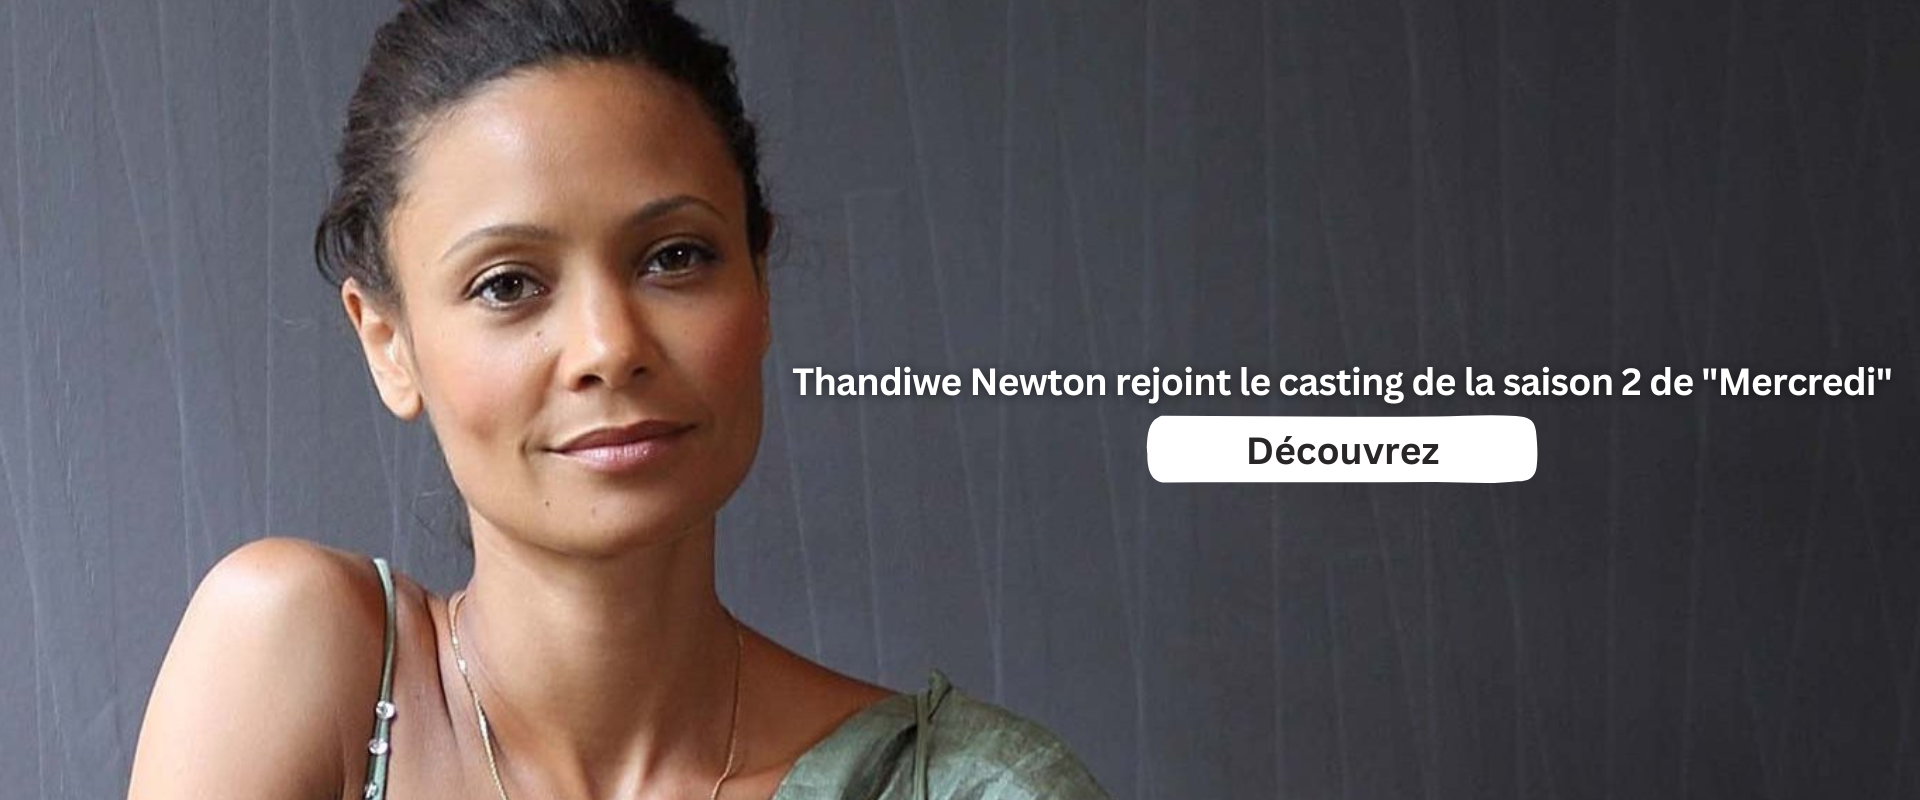 Thandiwe Newton rejoint le casting de la saison 2 de "Mercredi"